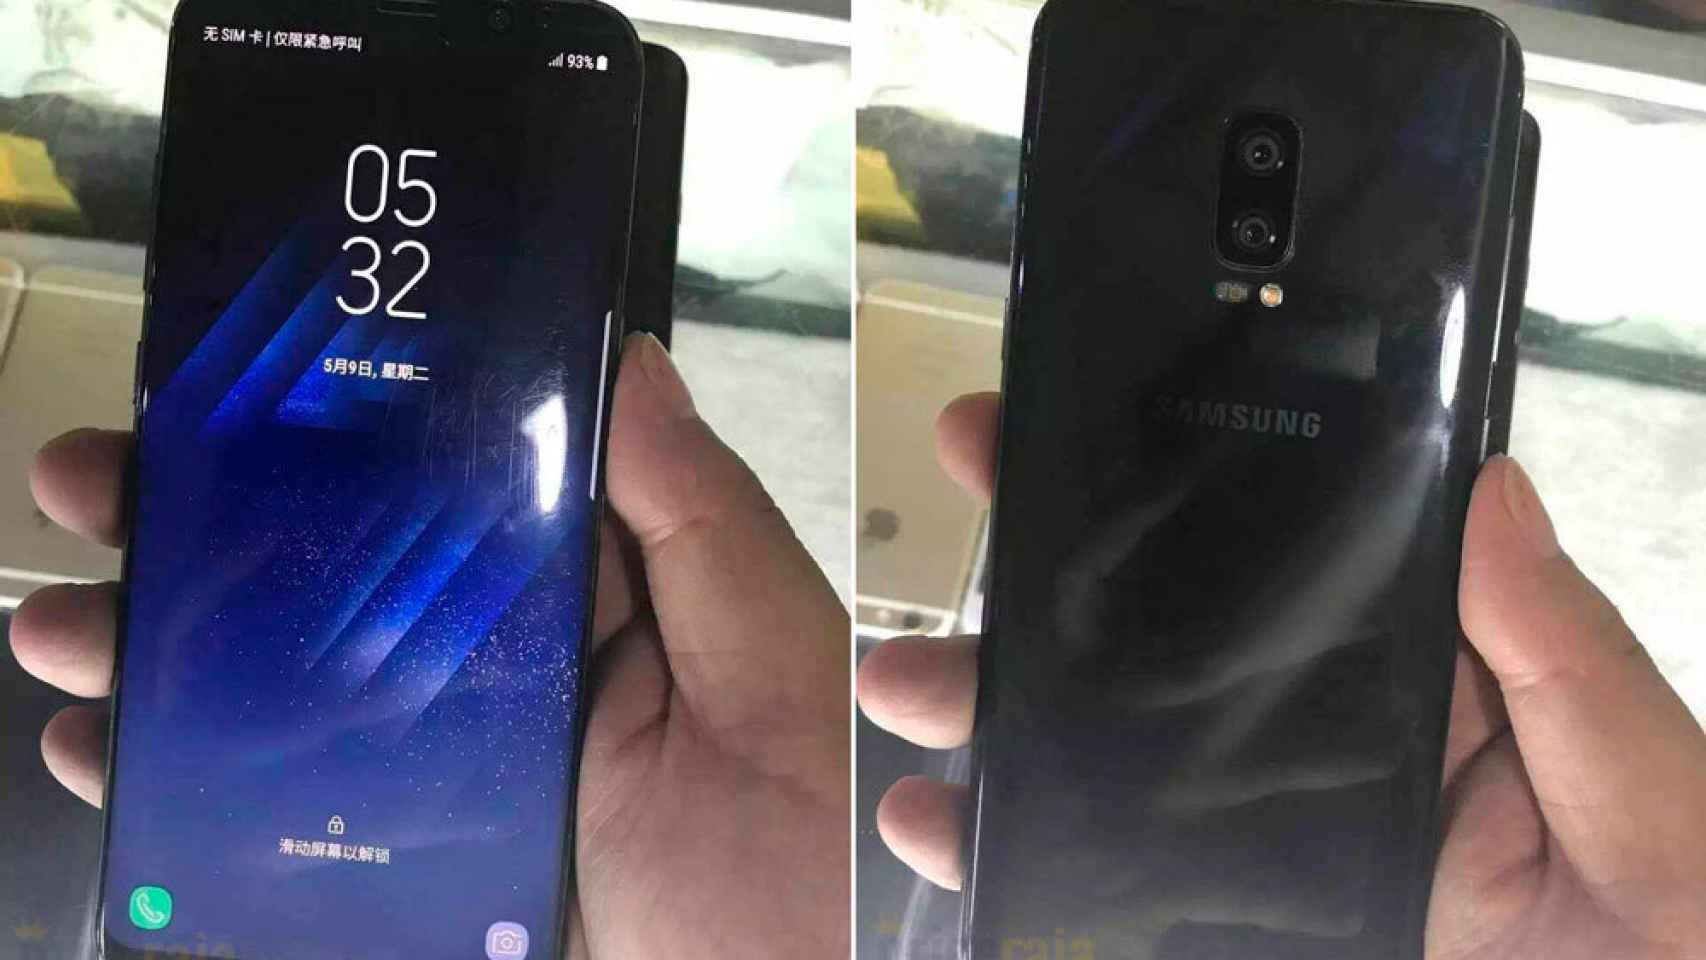 Fotos del Samsung Galaxy Note 8 filtradas: ¿donde está el lector de huellas?